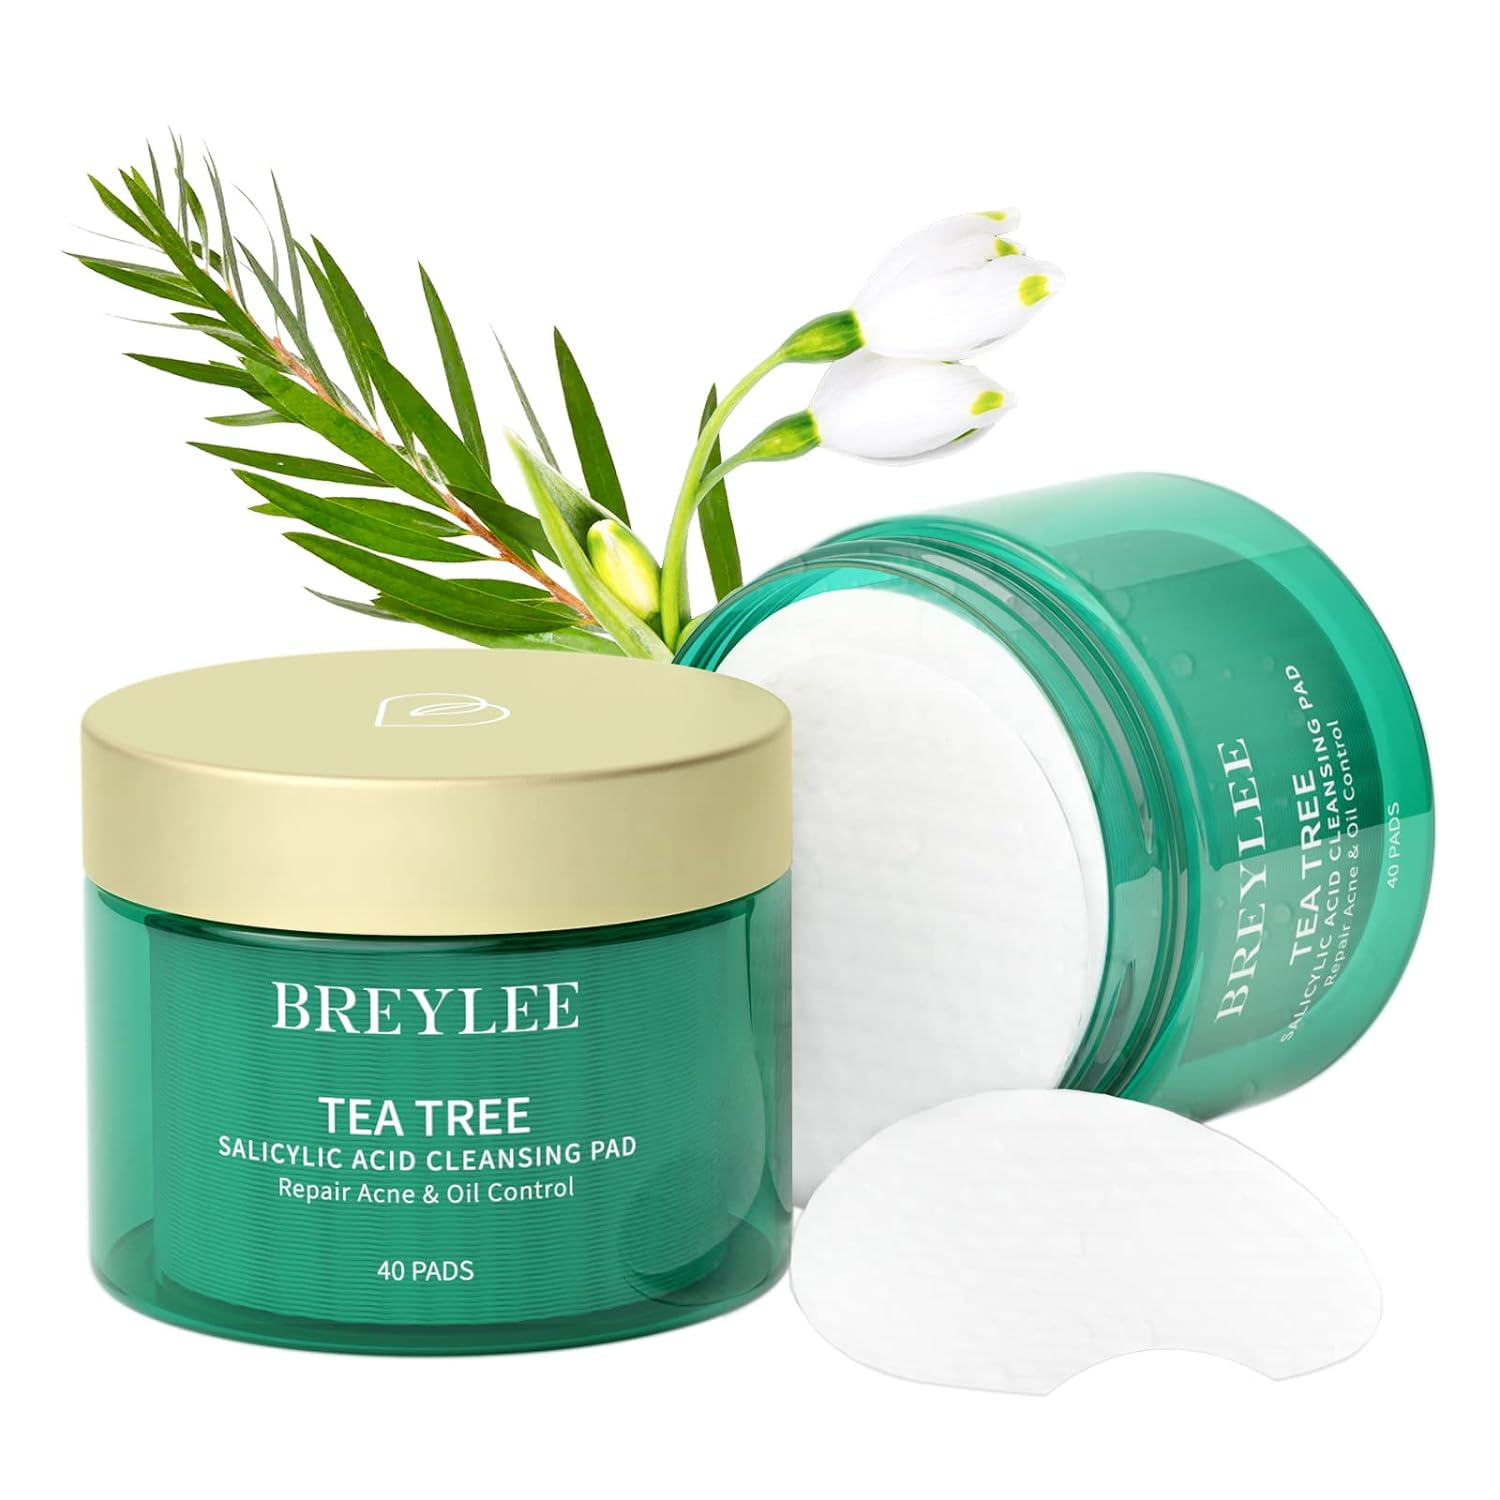 BREYLEE Tea Tree Cleansing Pad Salicylic Acid